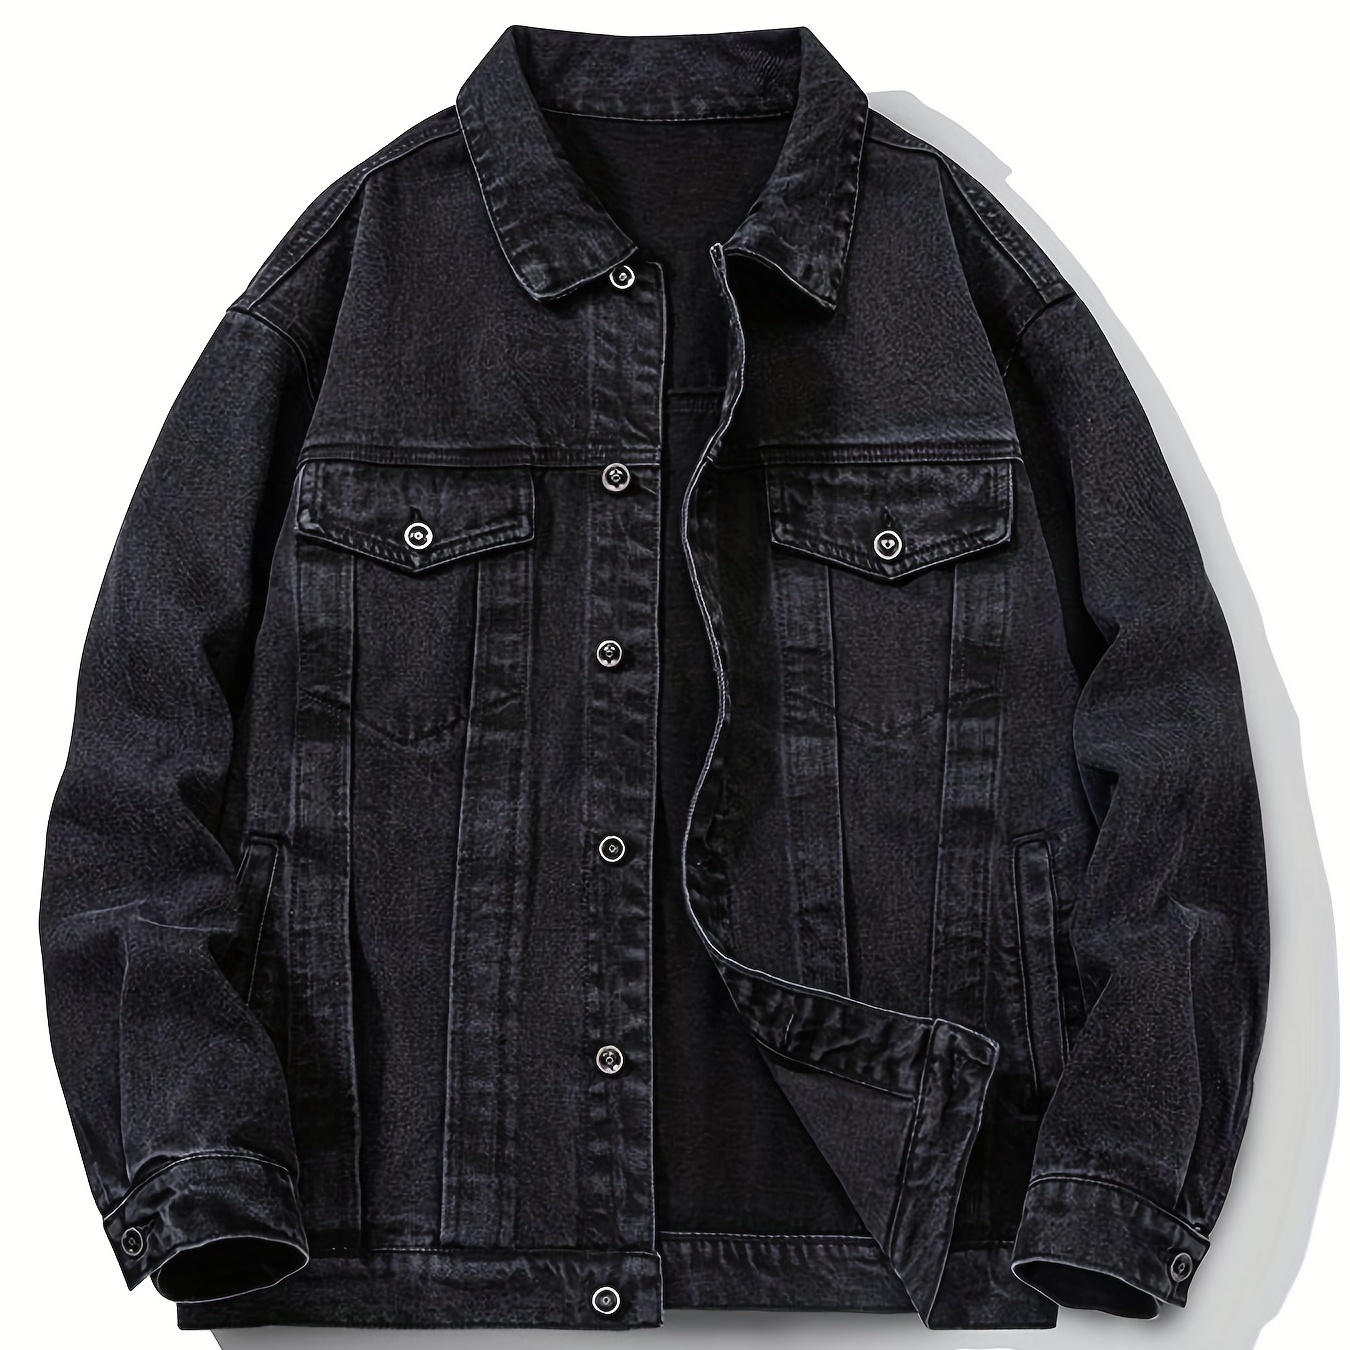 

Men's Casual Loose Fit Denim Jacket, Multi Pocket Button Up Denim Jacket For Spring Fall